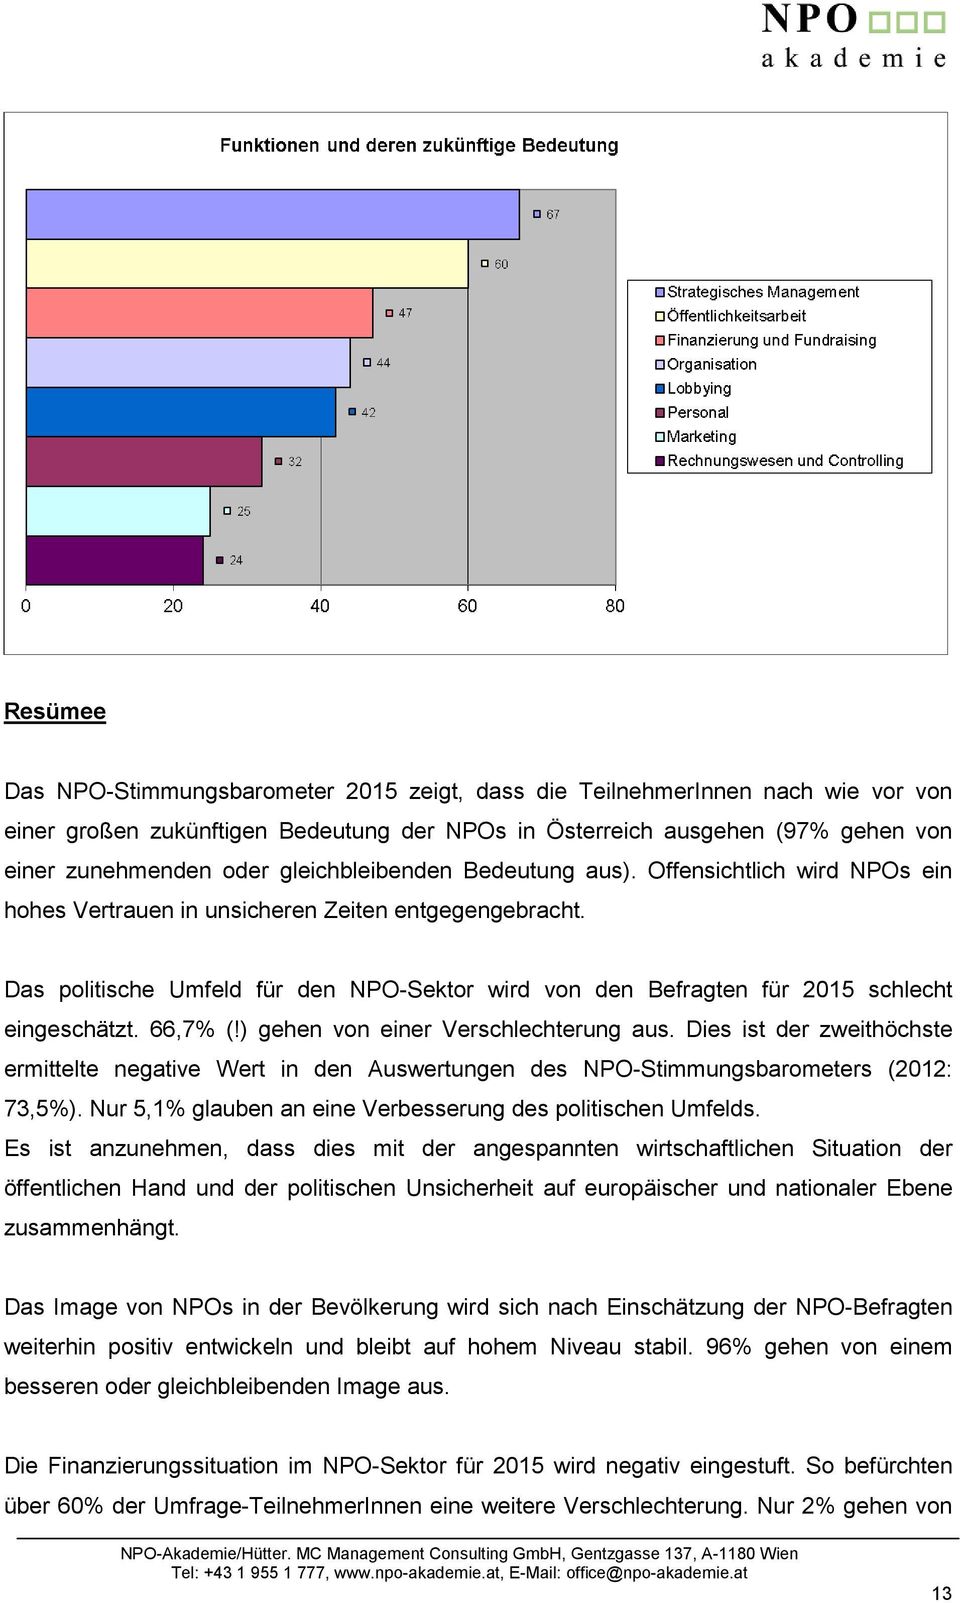 Das politische Umfeld für den NPO-Sektor wird von den Befragten für 2015 schlecht eingeschätzt. 66,7% (!) gehen von einer Verschlechterung aus.